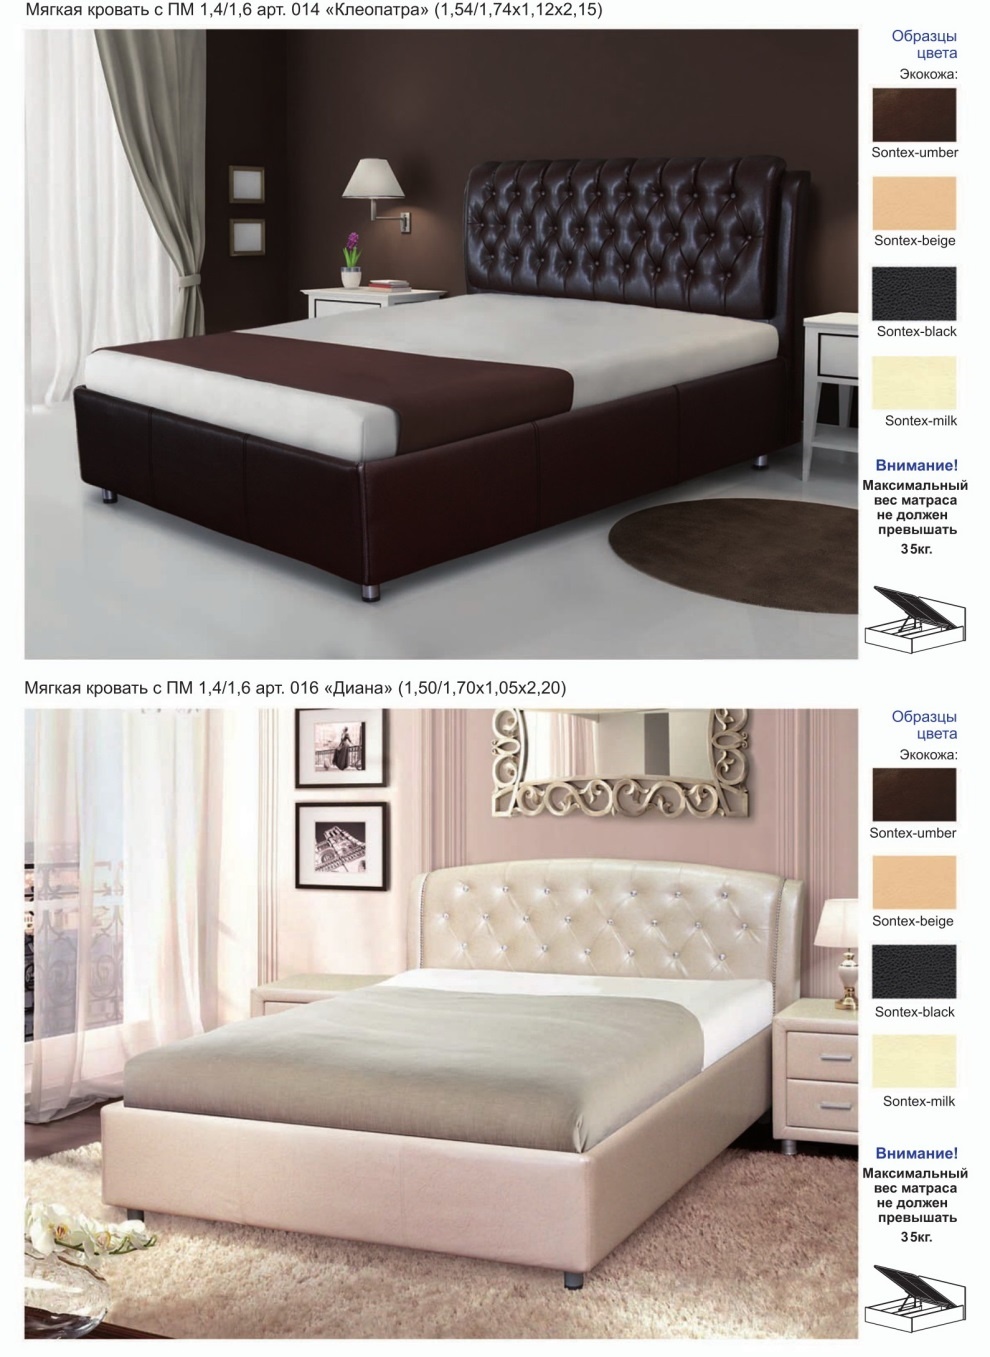 Двуспальная кровать Клеопатра Диал Мебель купить в Несвиже со скидкой. Фото и цены